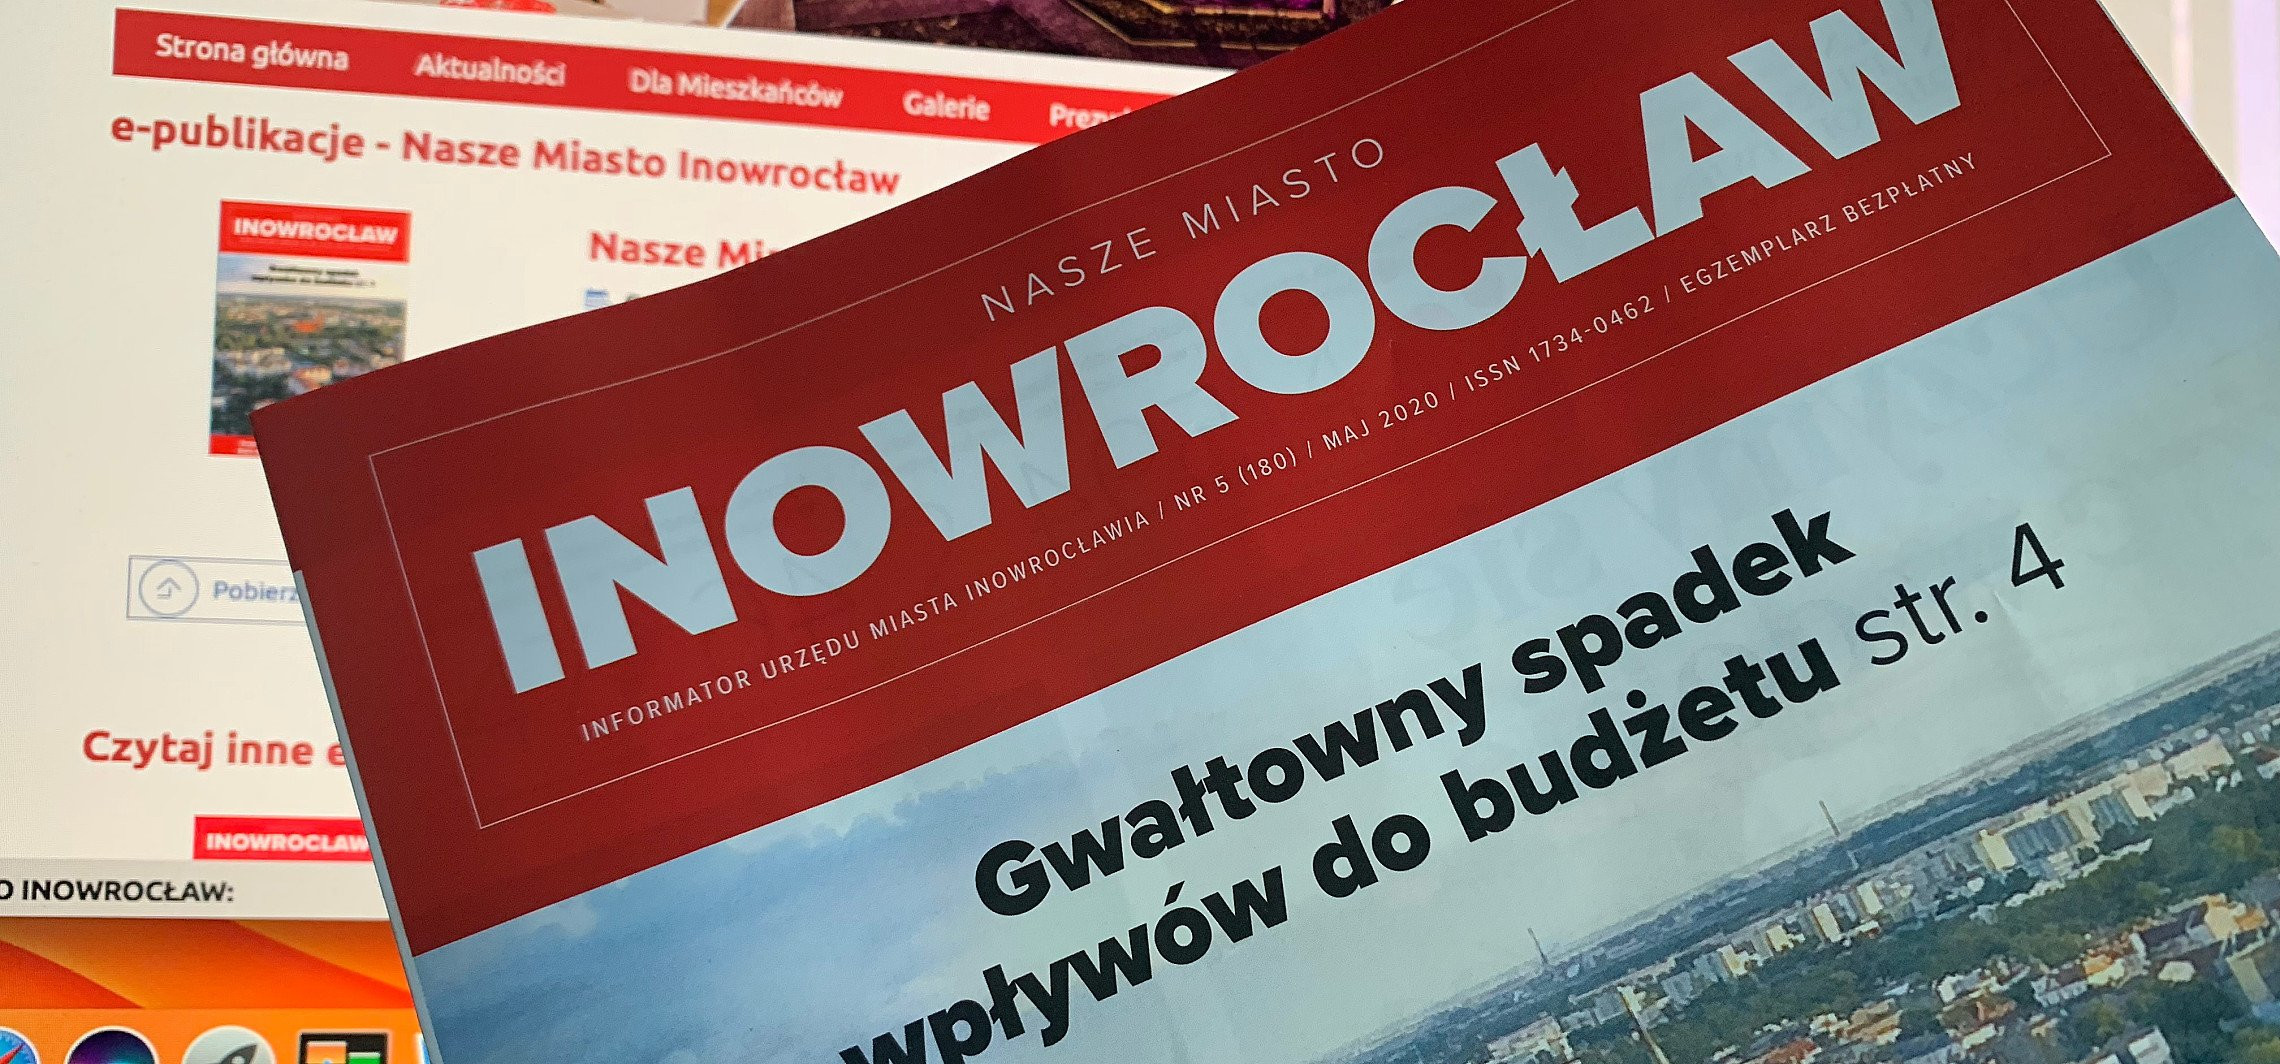 Inowrocław - Informator kwartalnikiem? Ratusz mówi nie